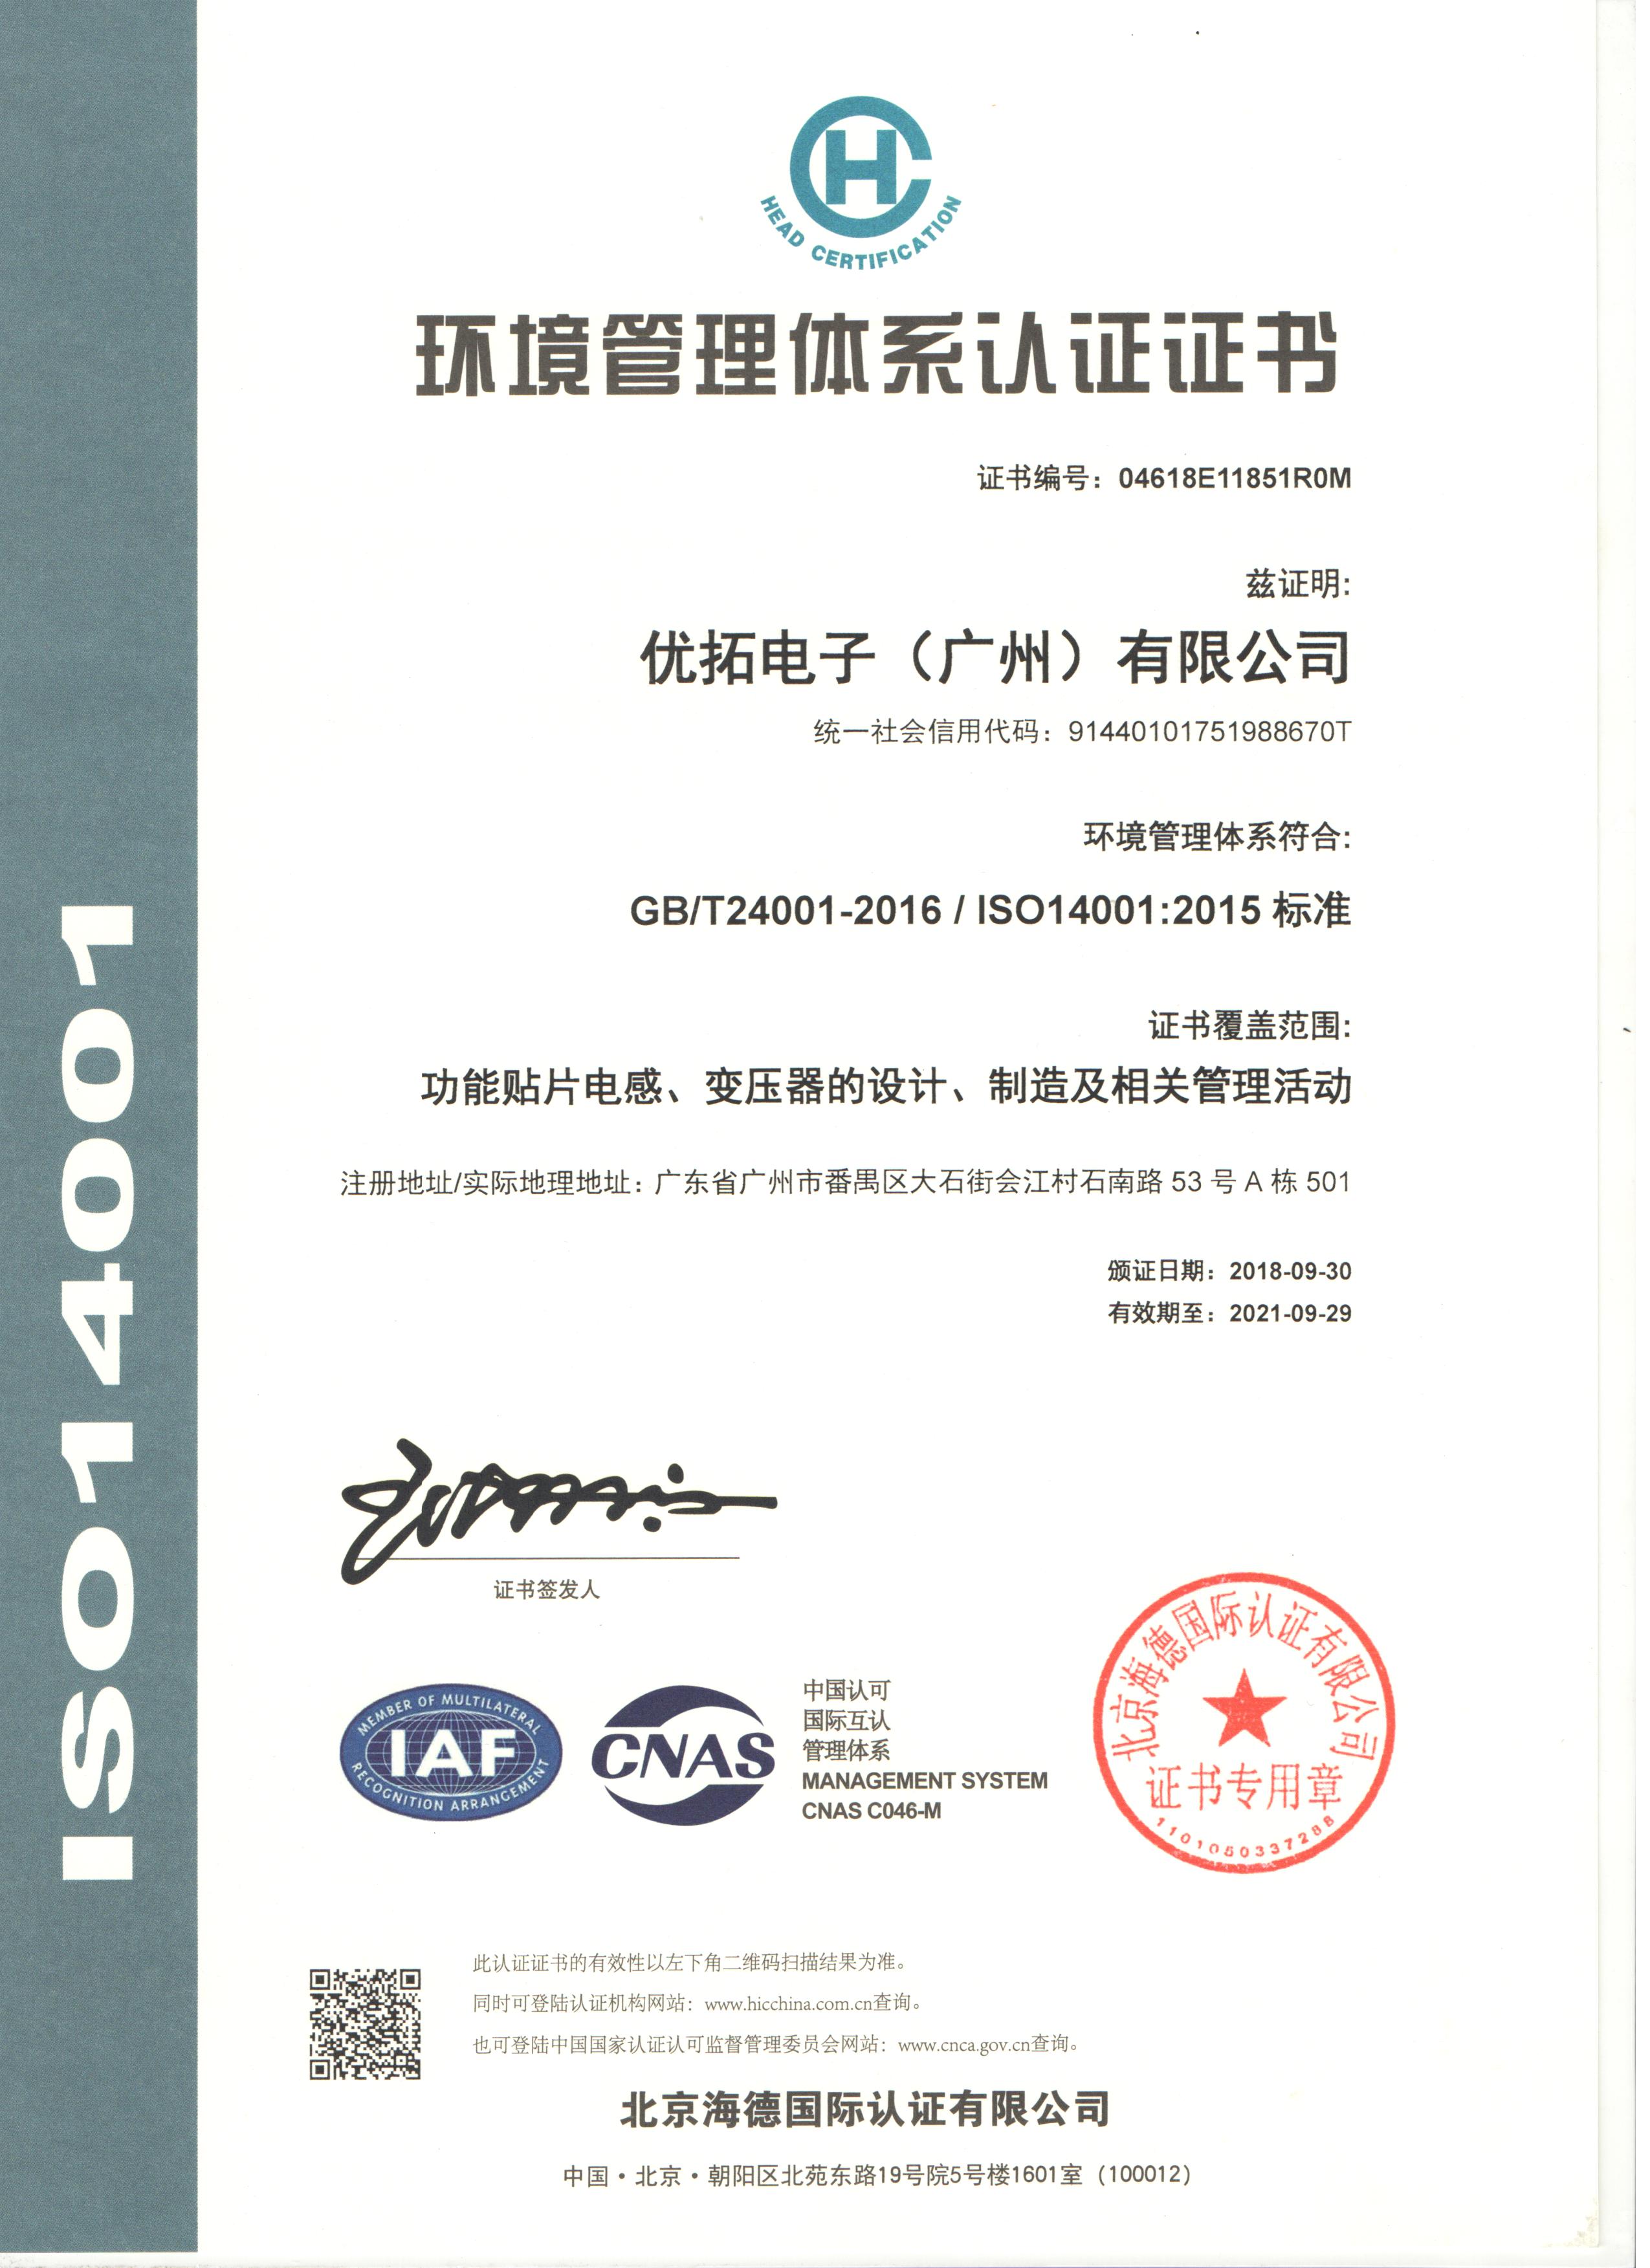 Certificate of Honour 2